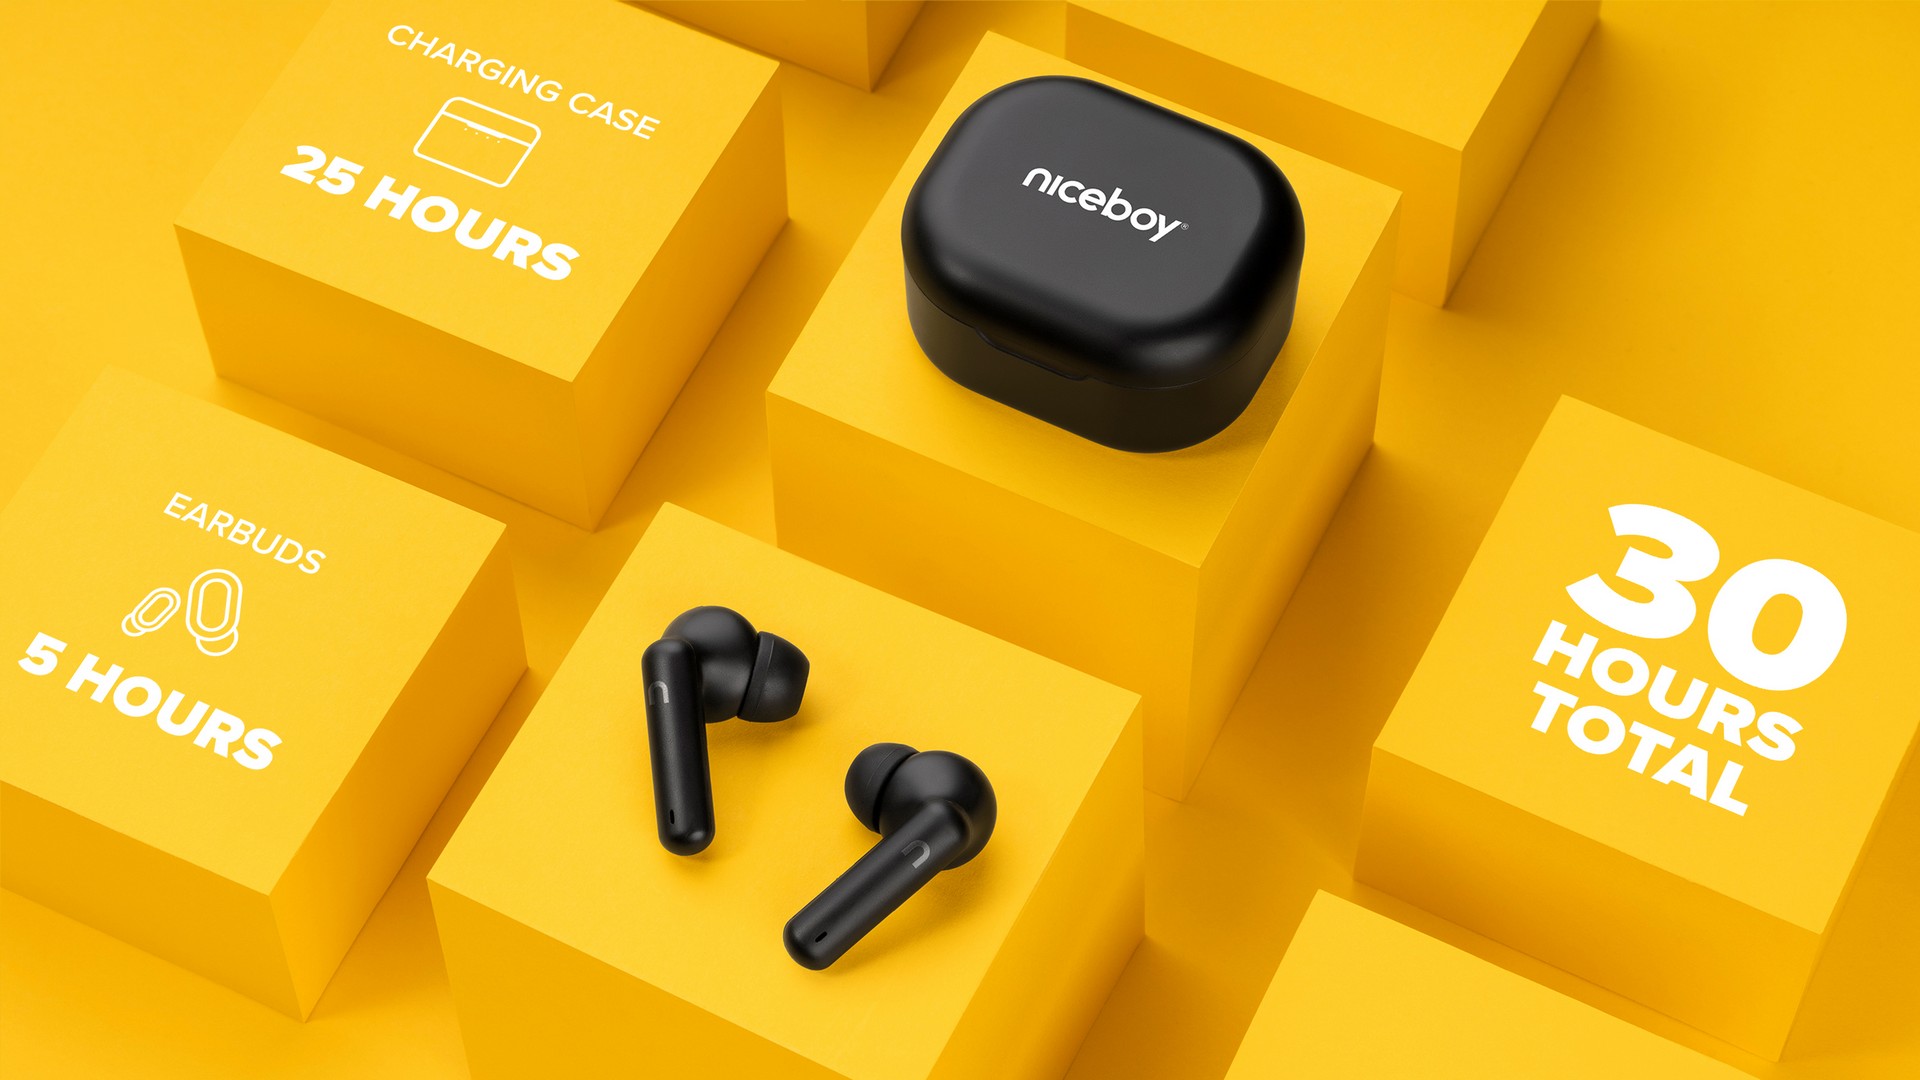 Bezdrátová sluchátka Niceboy Hive Pins 3 s dobíjecím pouzdrem vydrží hrát až 30 hodin na 1 nabití